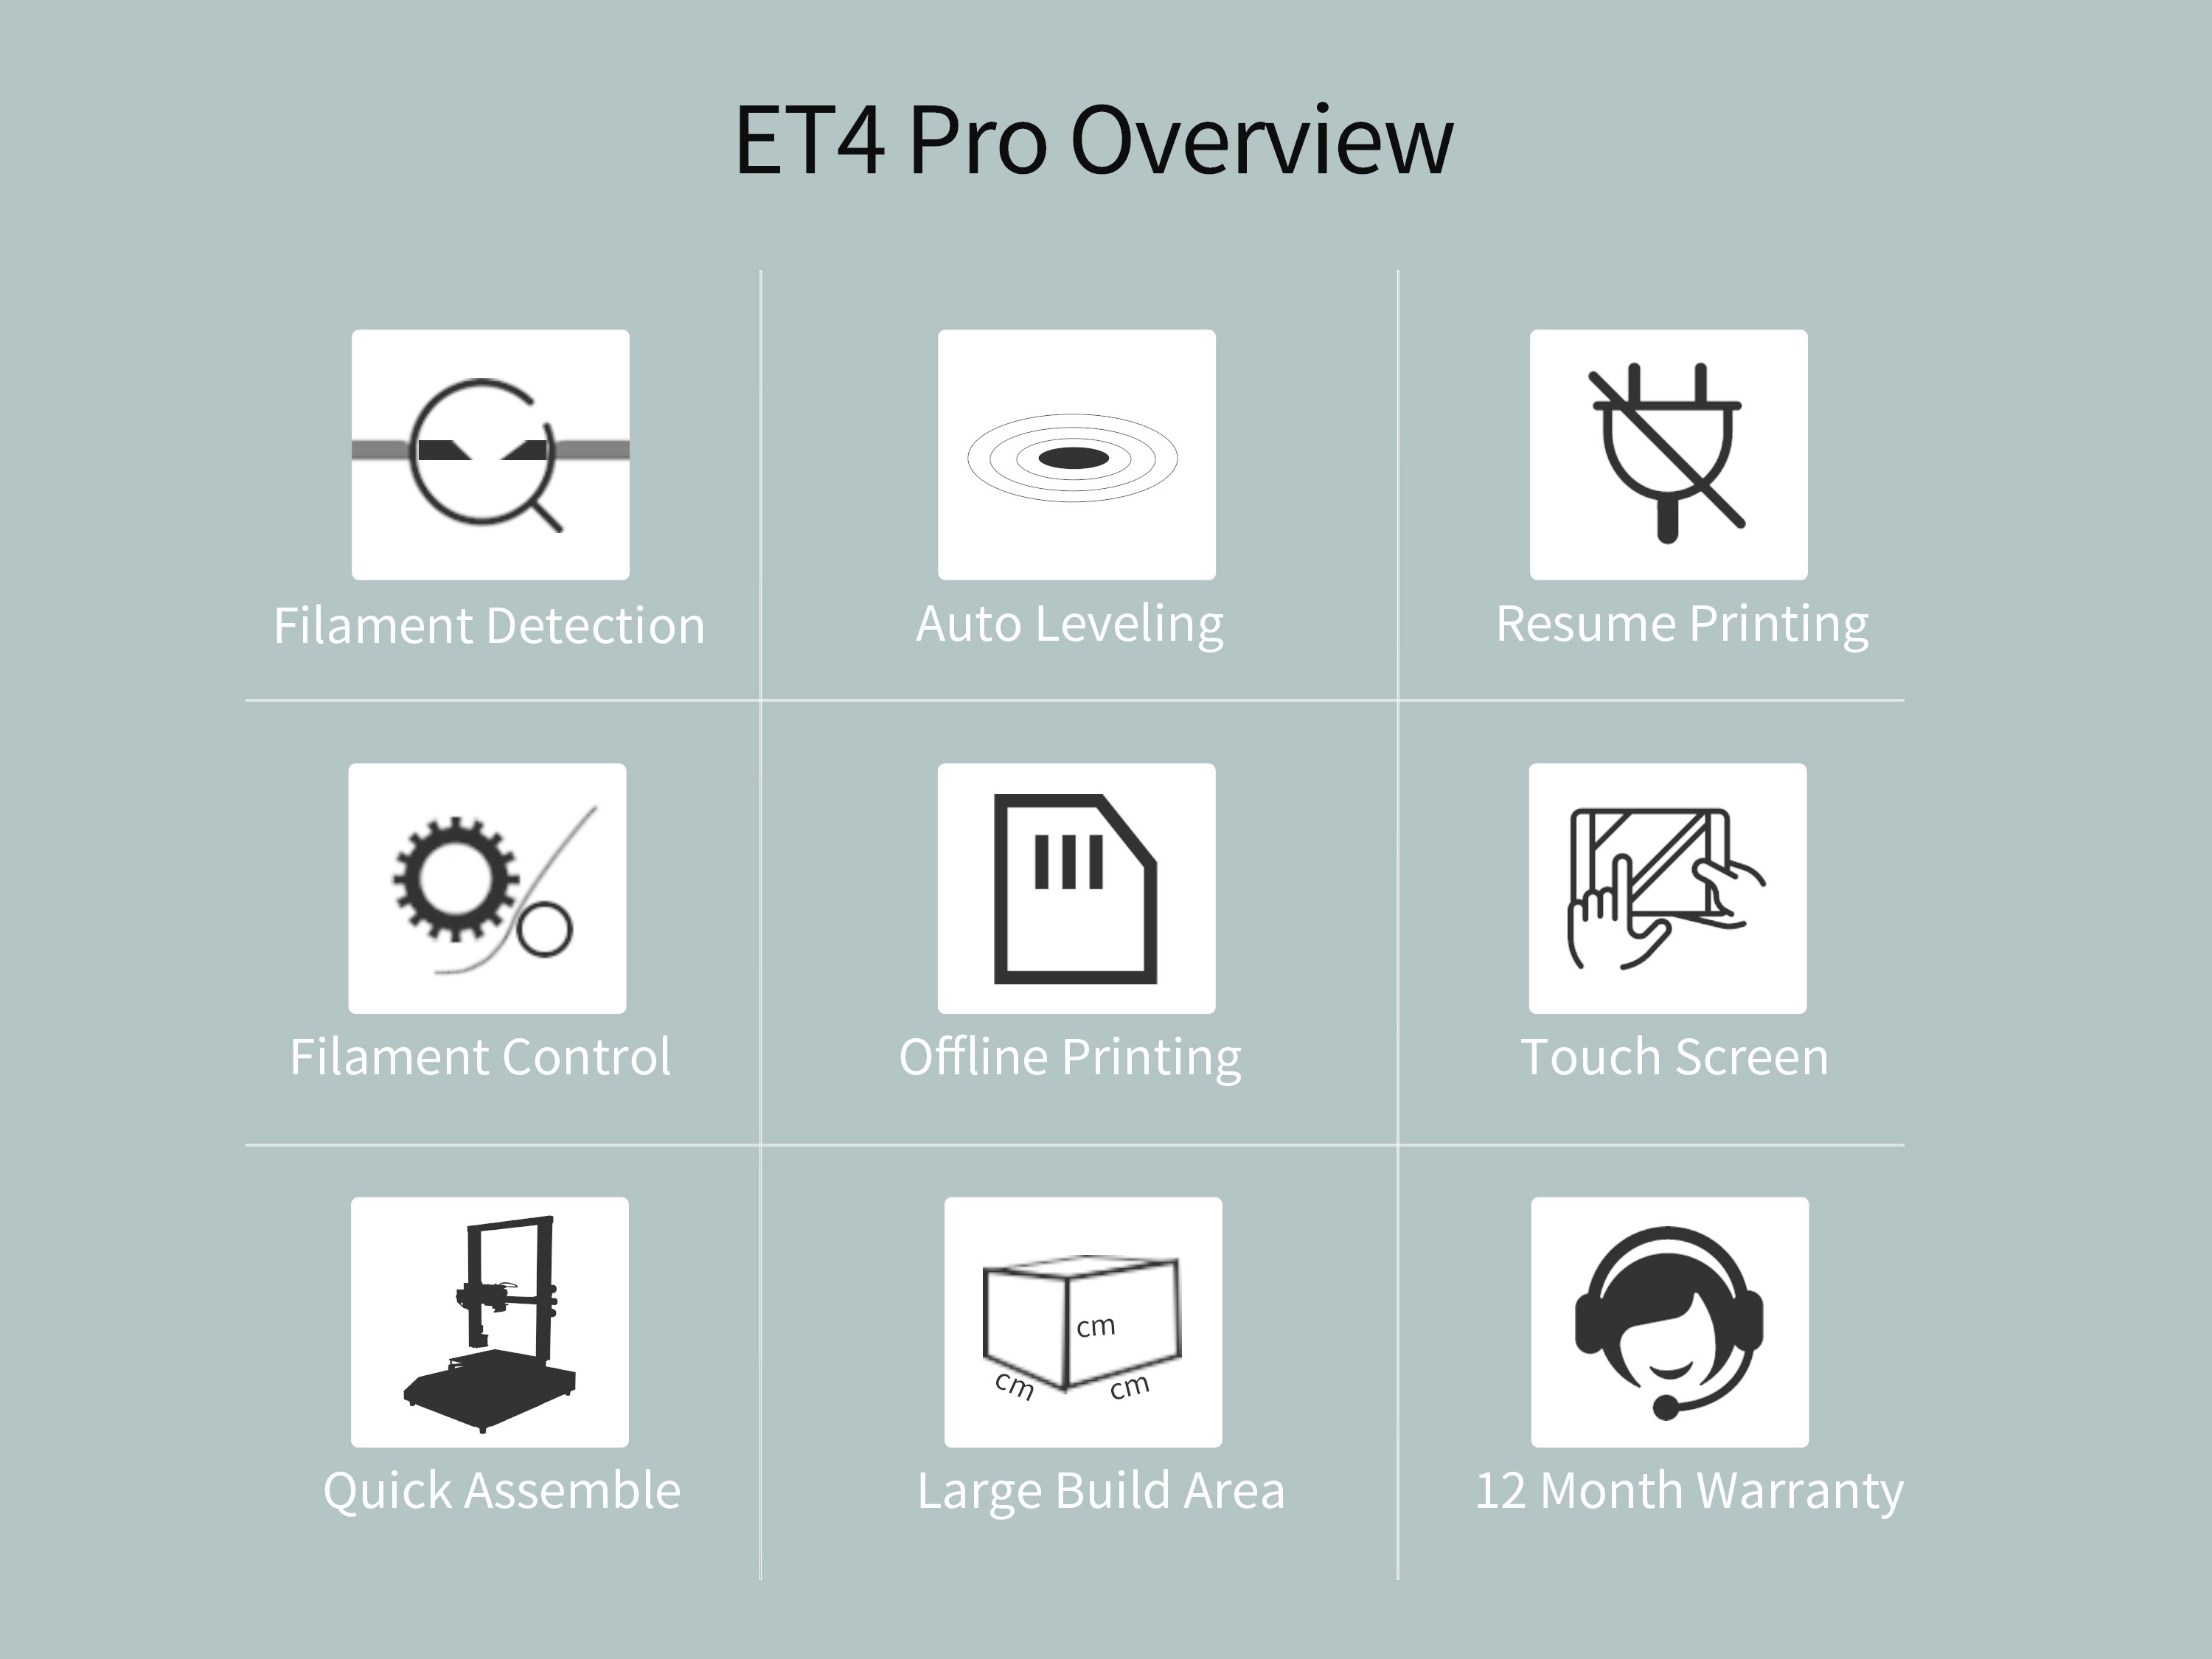 Anet ET4 PRO Color Touch Screen Mute High-quality Fast Installation FDM 3D Printer - Black ET4 PRO EU Plug